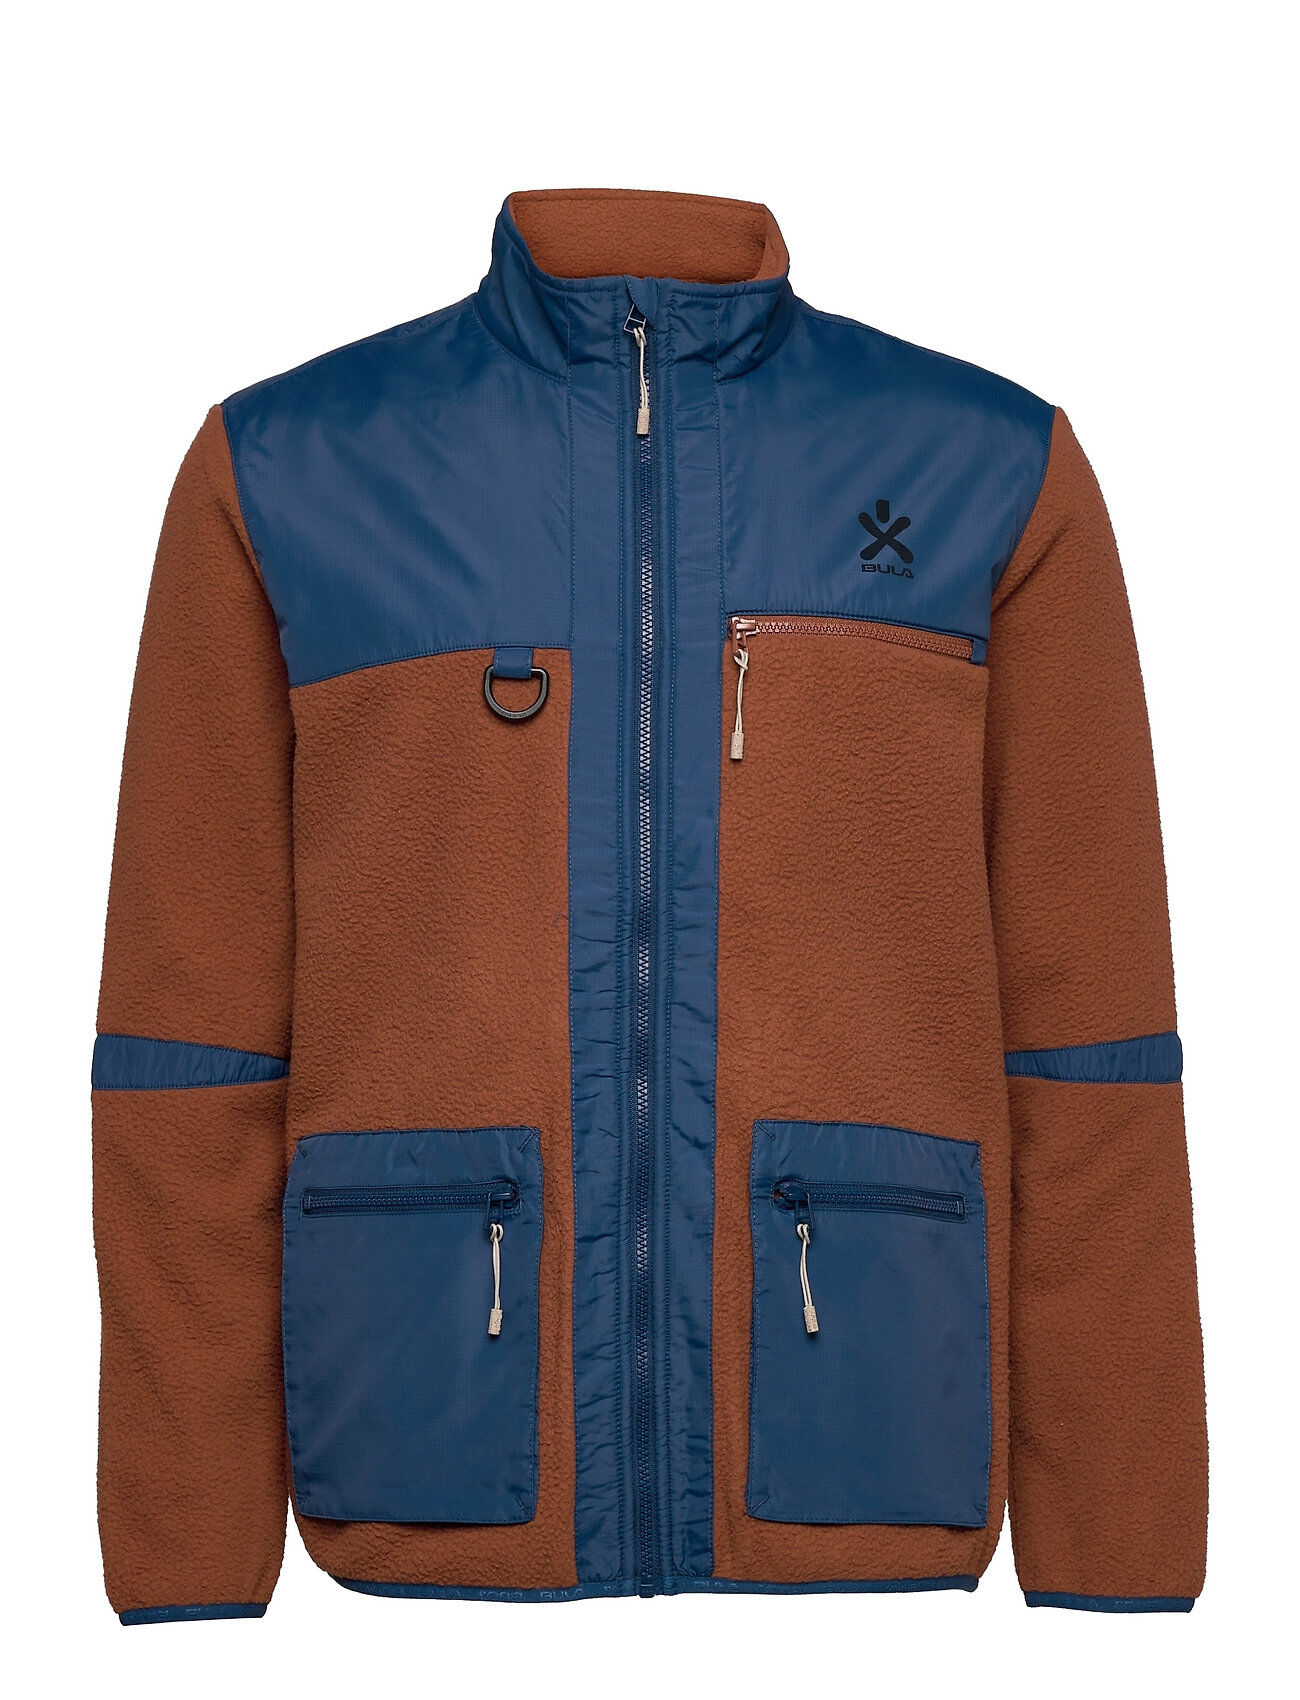 Bula Utility Fleece Jacket Sweat-shirts & Hoodies Fleeces & Midlayers Multi/mønstret Bula